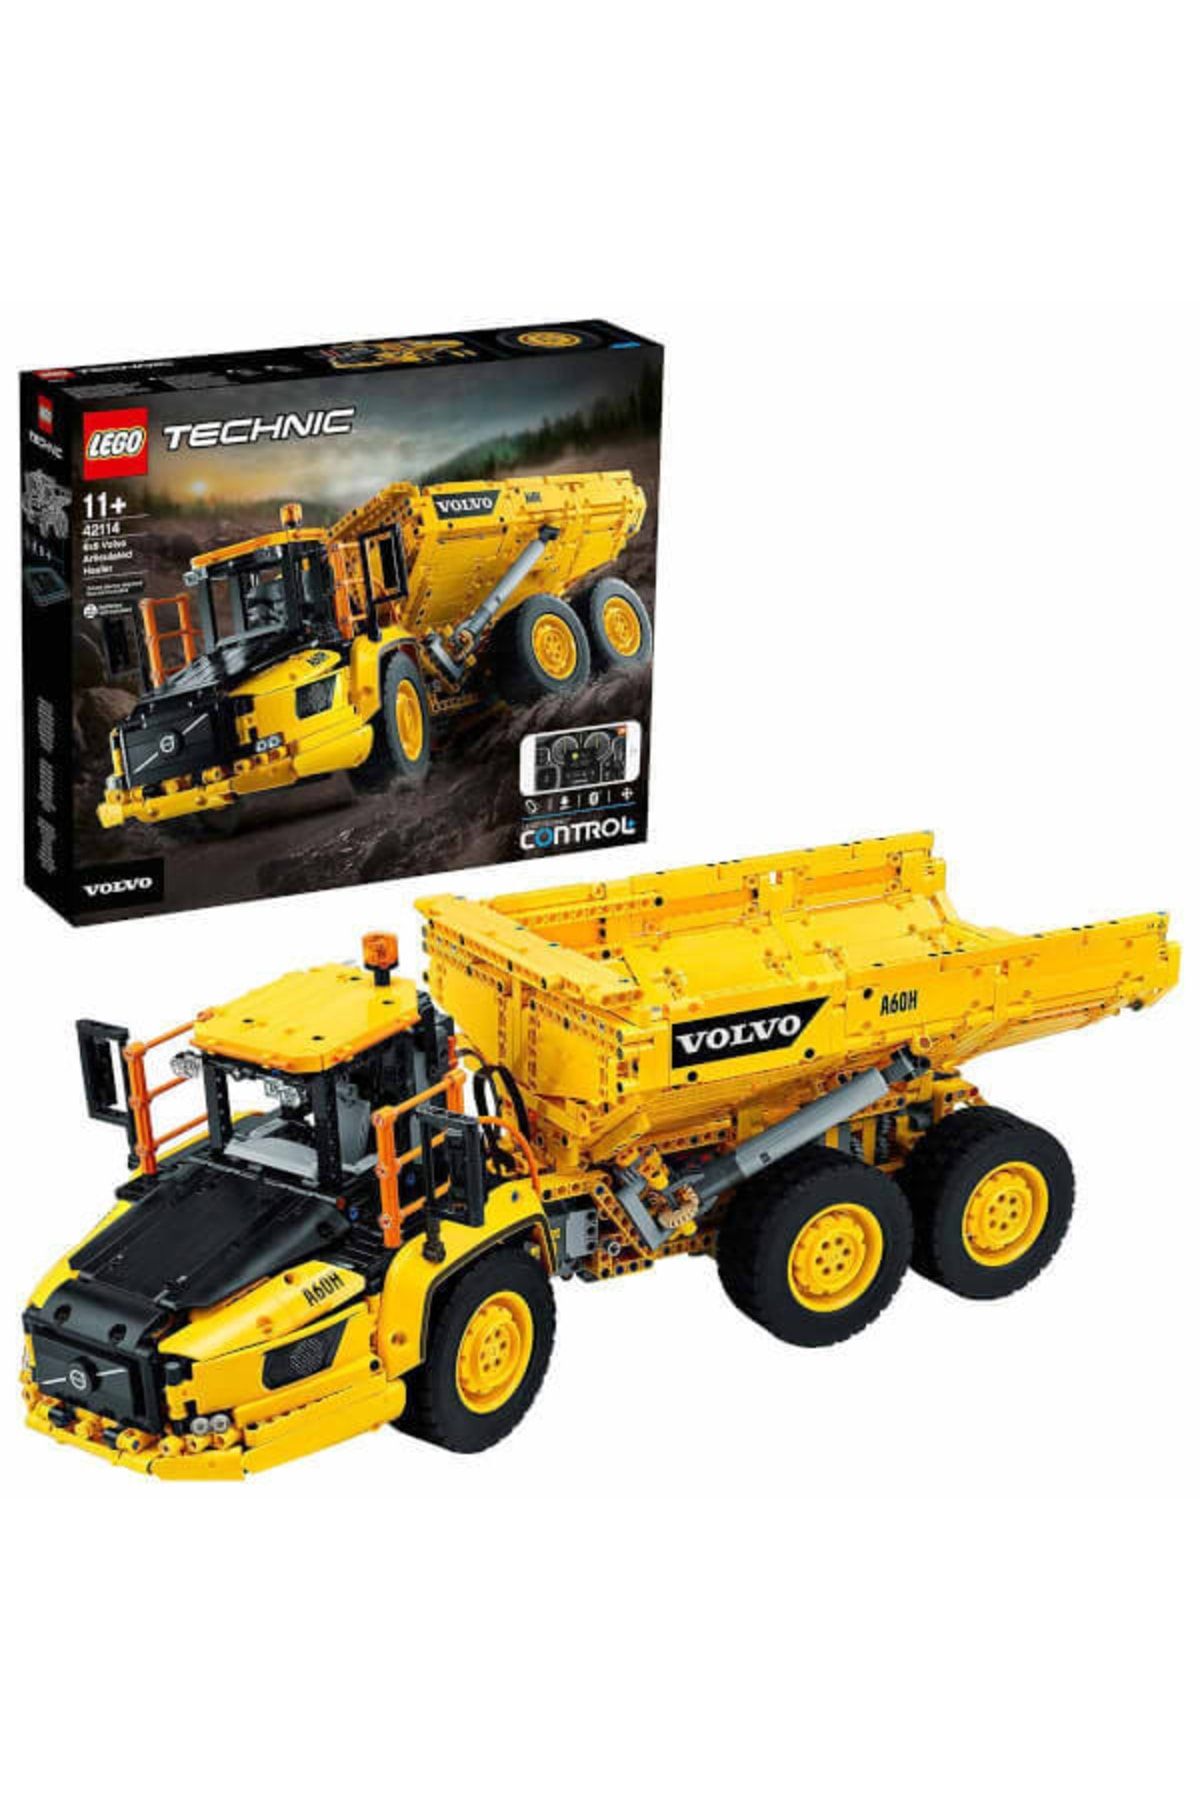 LEGO لگو کامیون مفصلی ولوو 6x6 (42114) برای بچه هایی که عاشق اسباب بازی های ساختمانی هستند